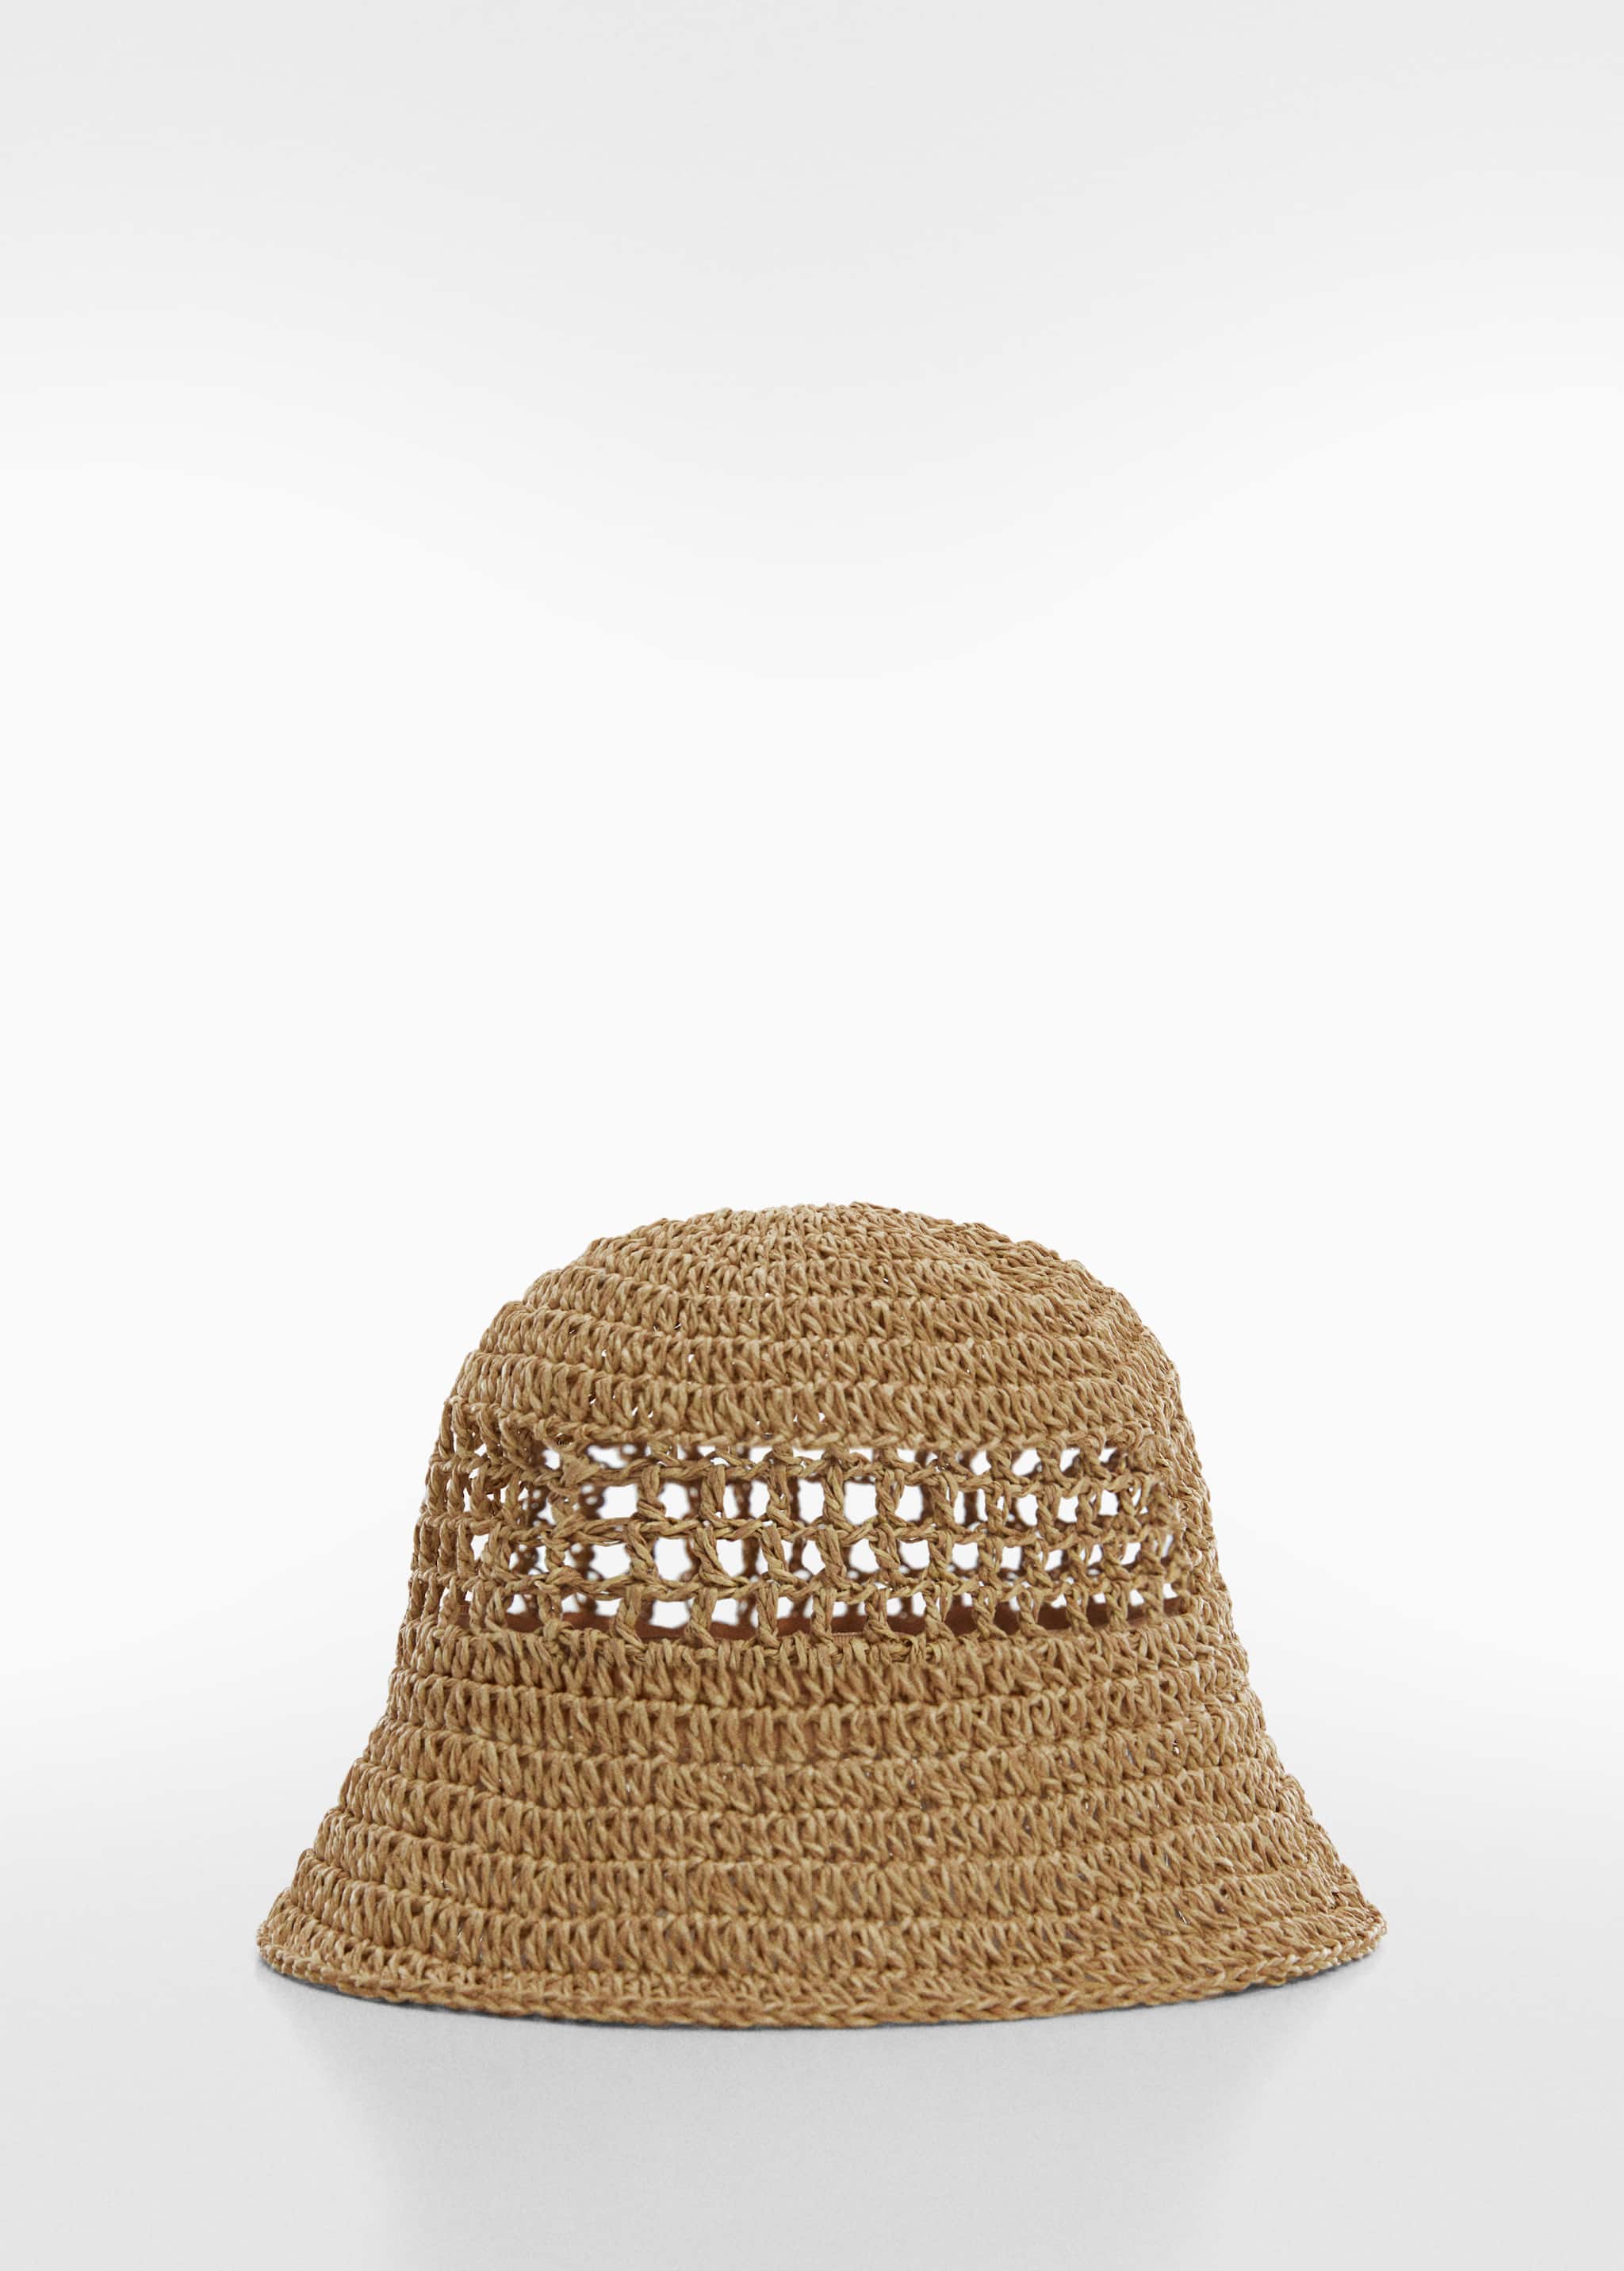 قبعة دلو من القش - منتج دون نموذج